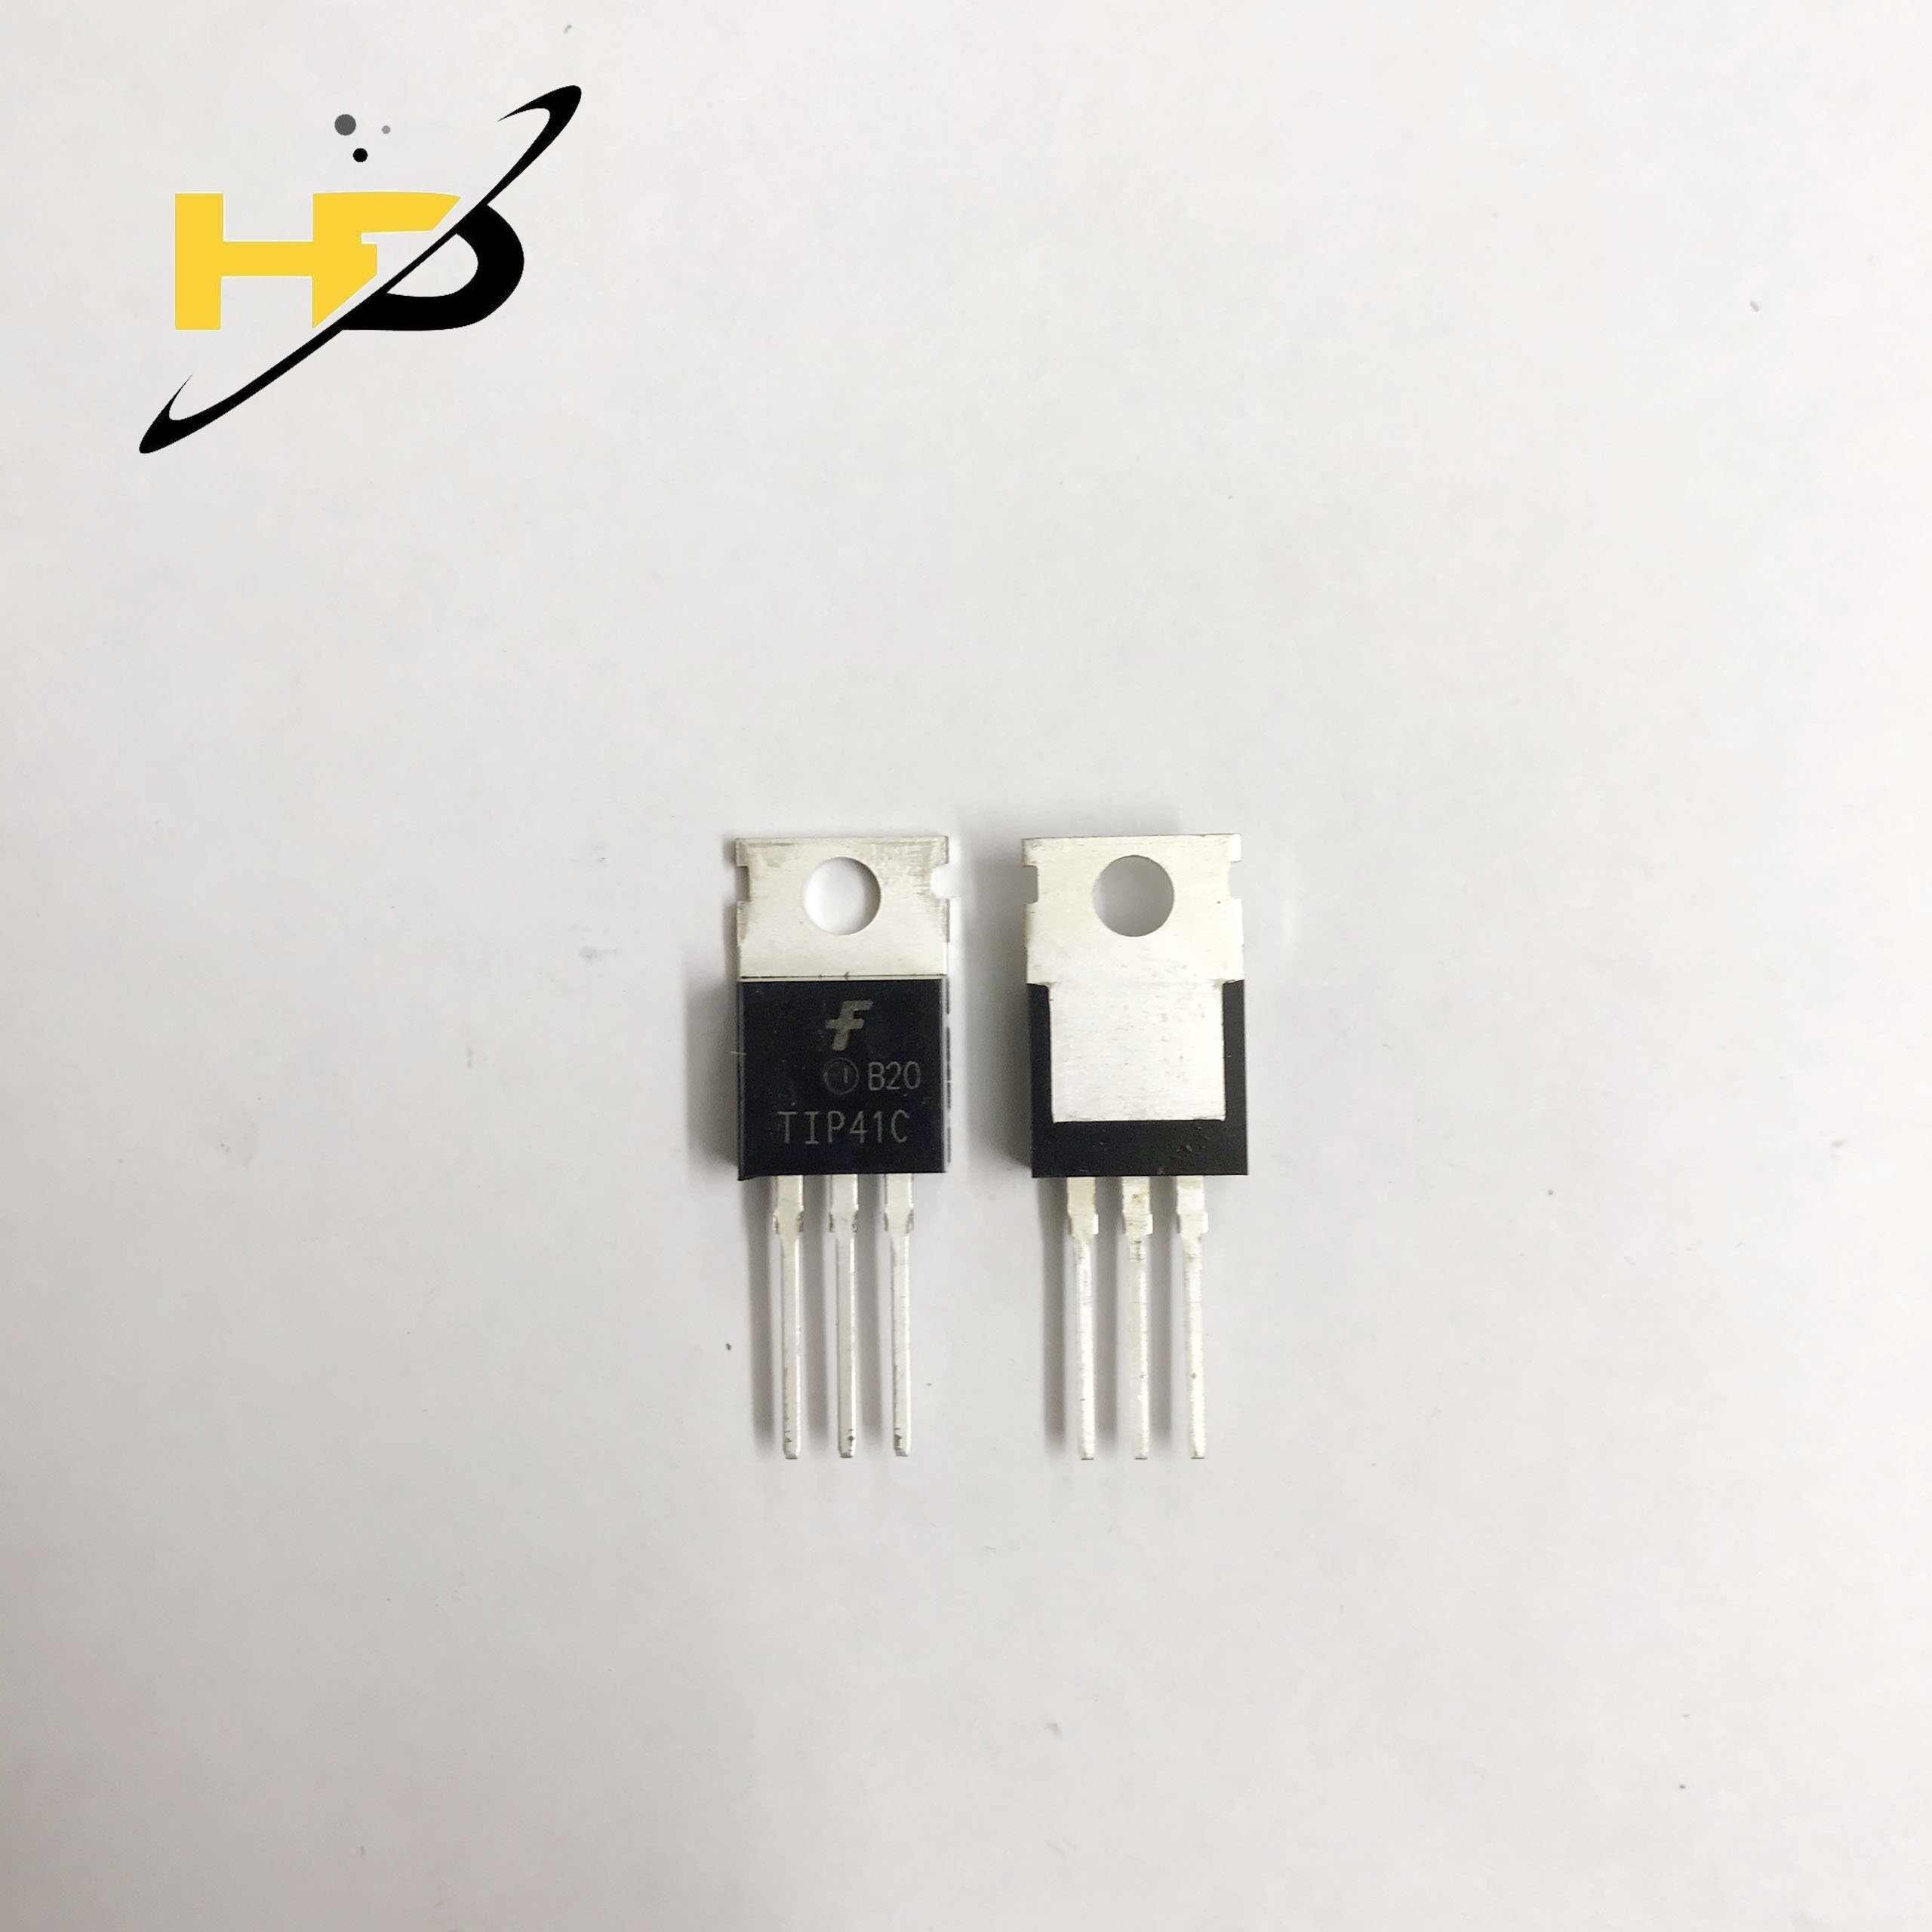 ( Gói 5 Con ) Transistor Công Suất TIP41C TO-220 6A 100V , Tranzito Dạng Chân Cắm